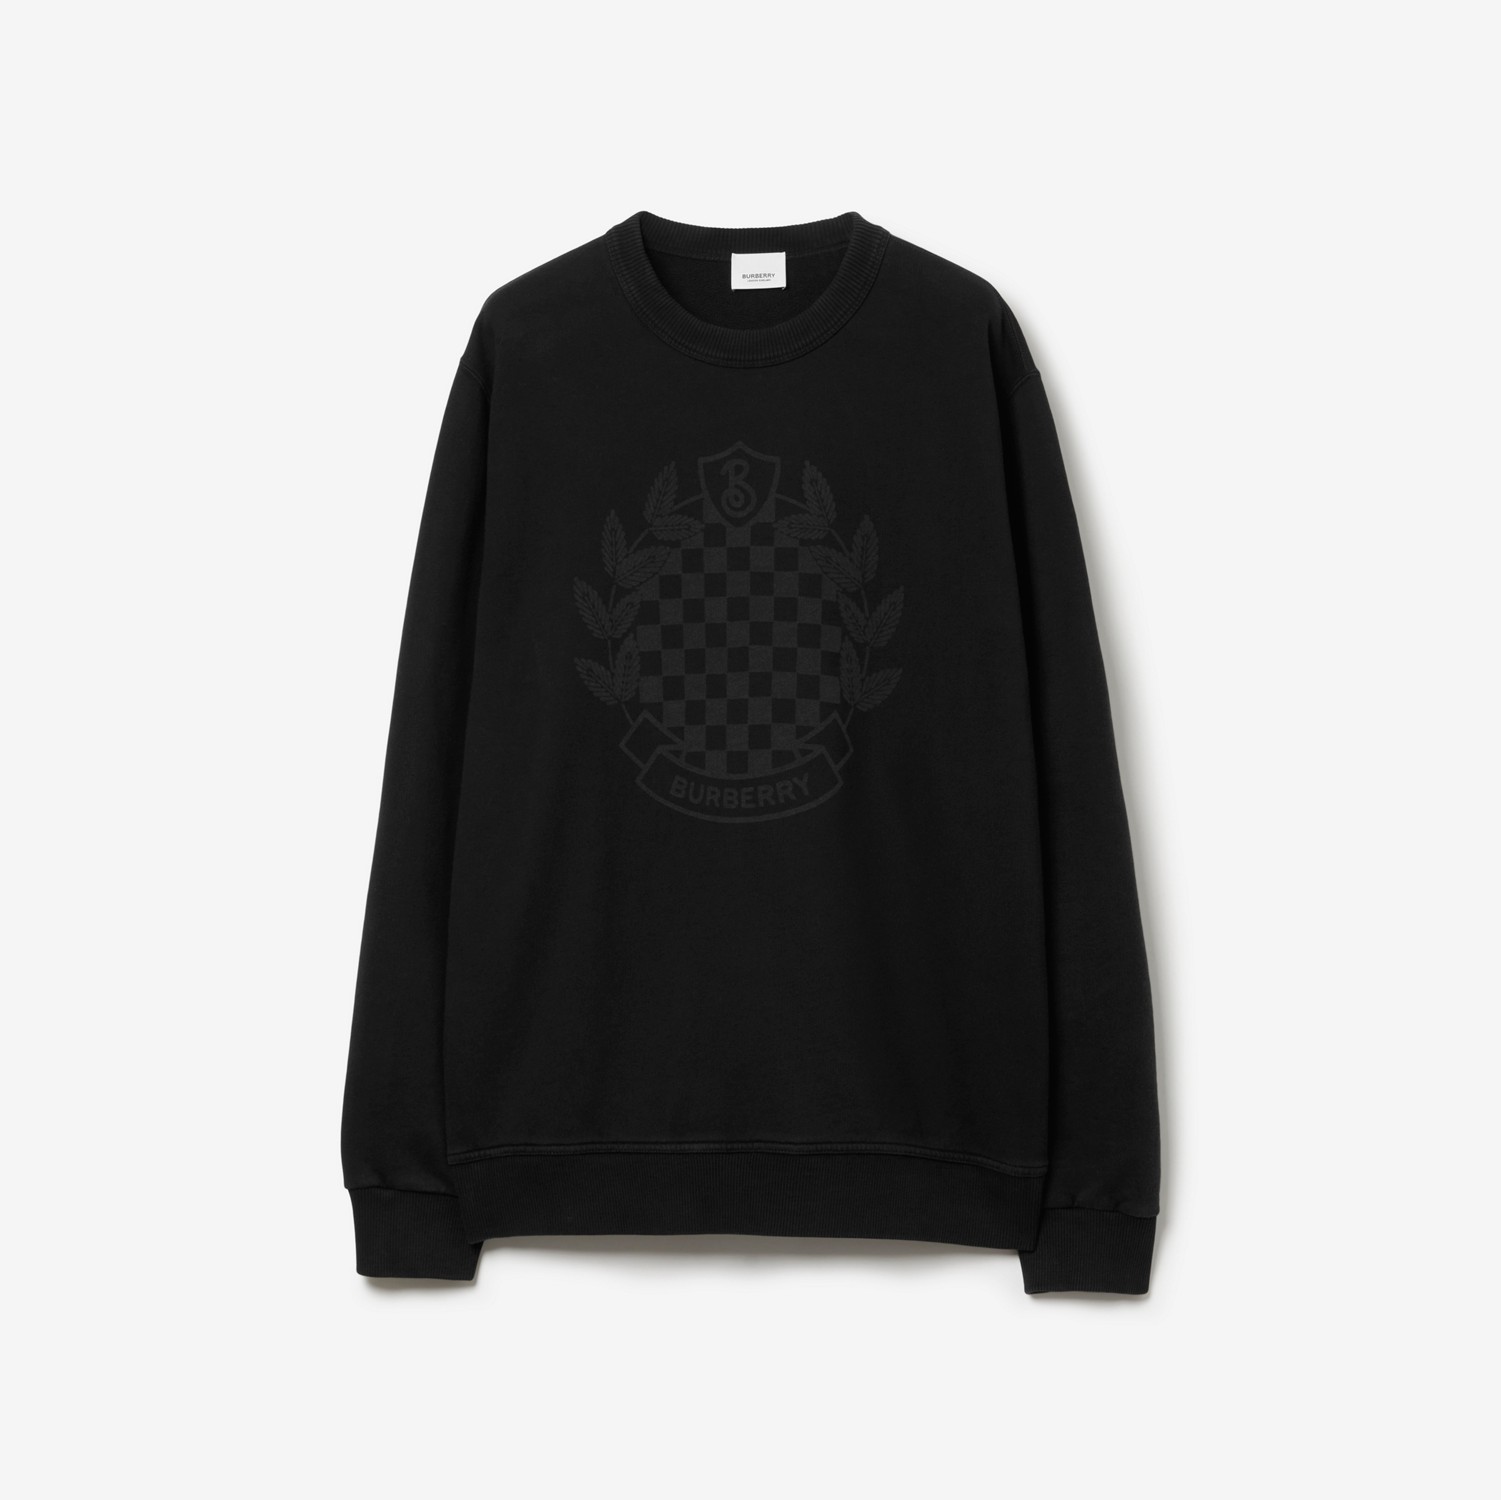 Baumwollsweatshirt mit Karo-Emblem (Schwarz) - Herren | Burberry®